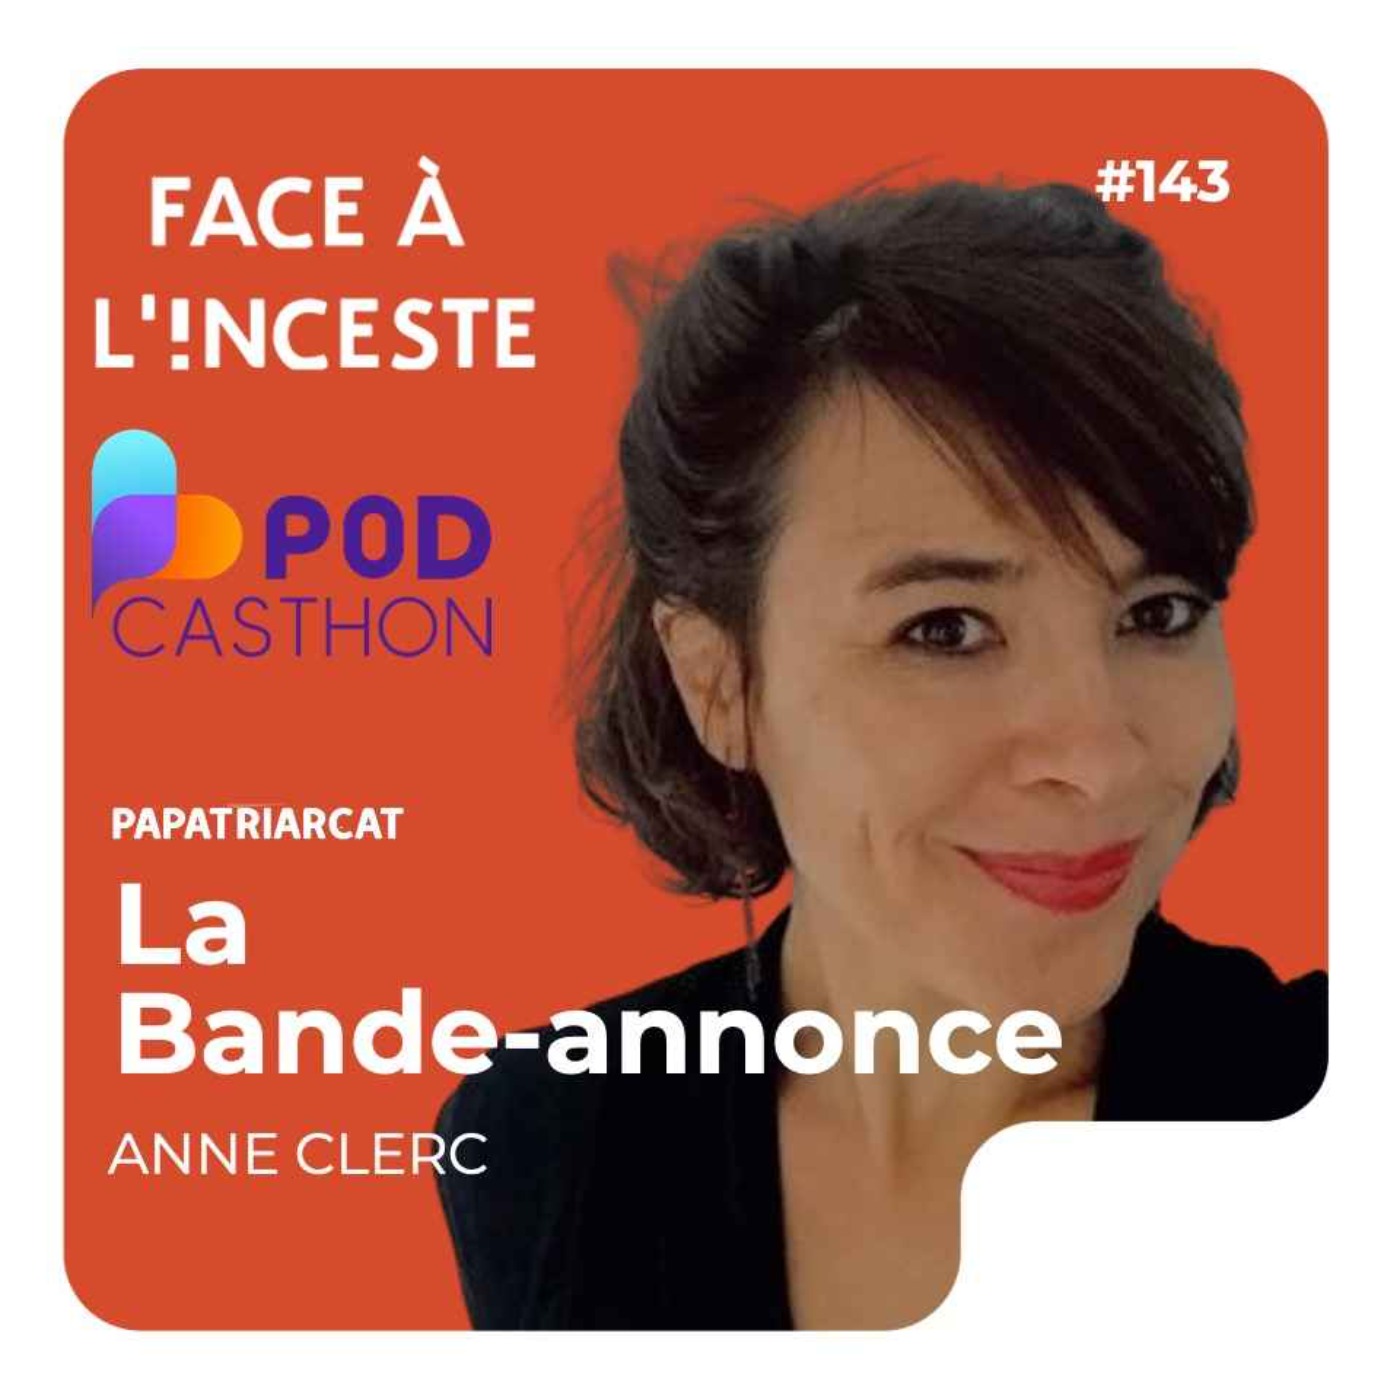 BANDE-ANNONCE #143 [Spécial Podcasthon] - Prévenir et agir contre l'inceste - Anne Clerc asso Face à l'inceste